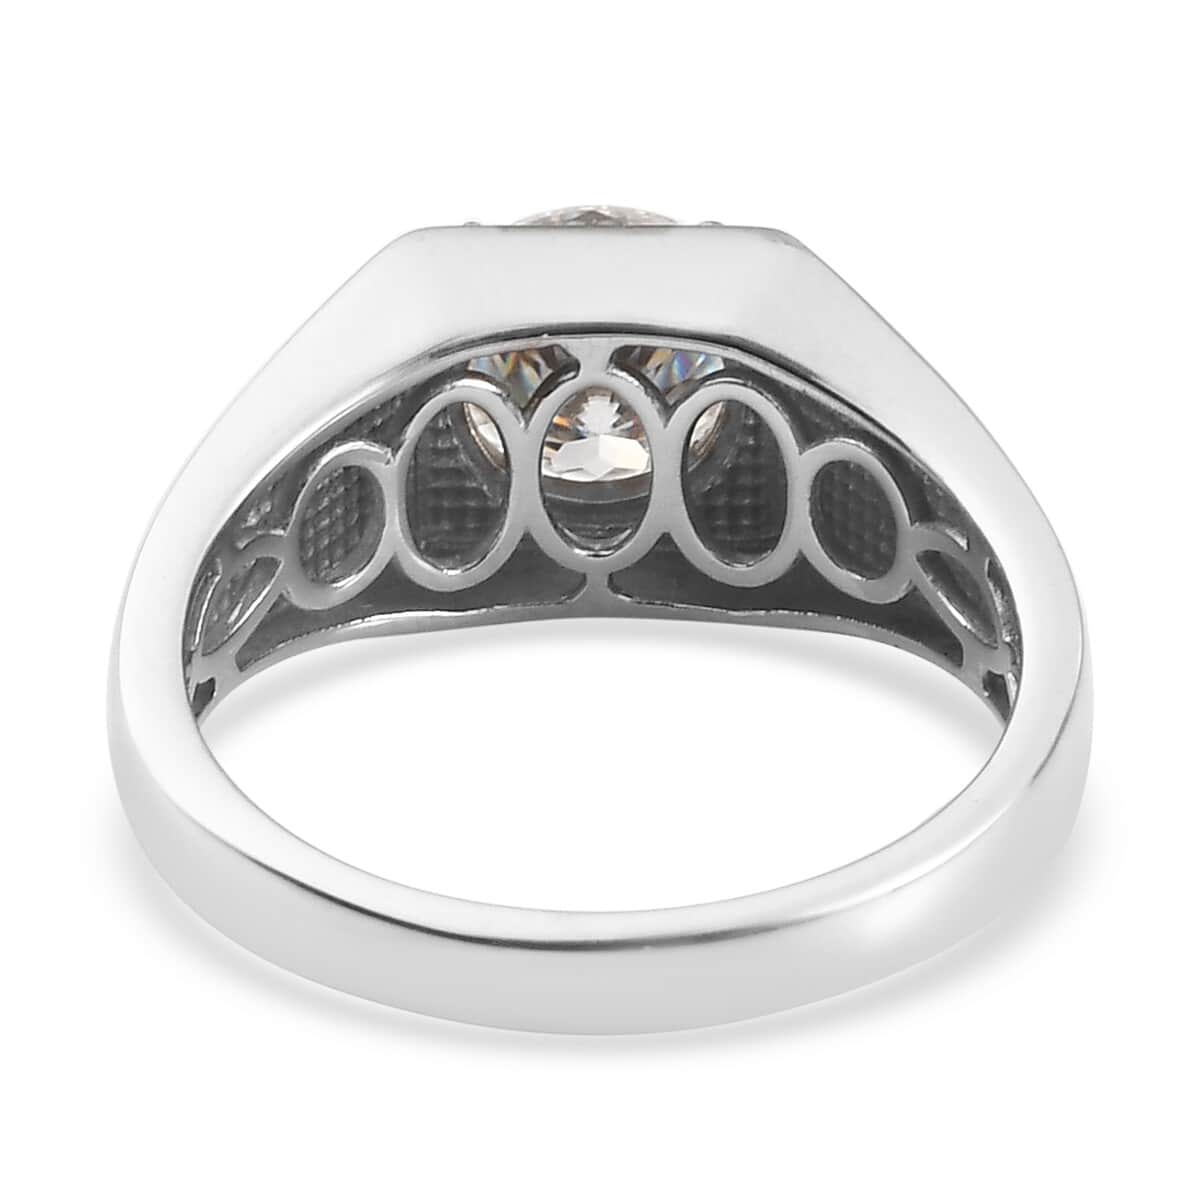 100 Facet Moissanite VS EF Men's Ring in Platinum Over Sterling Silver 1.90 ctw image number 4